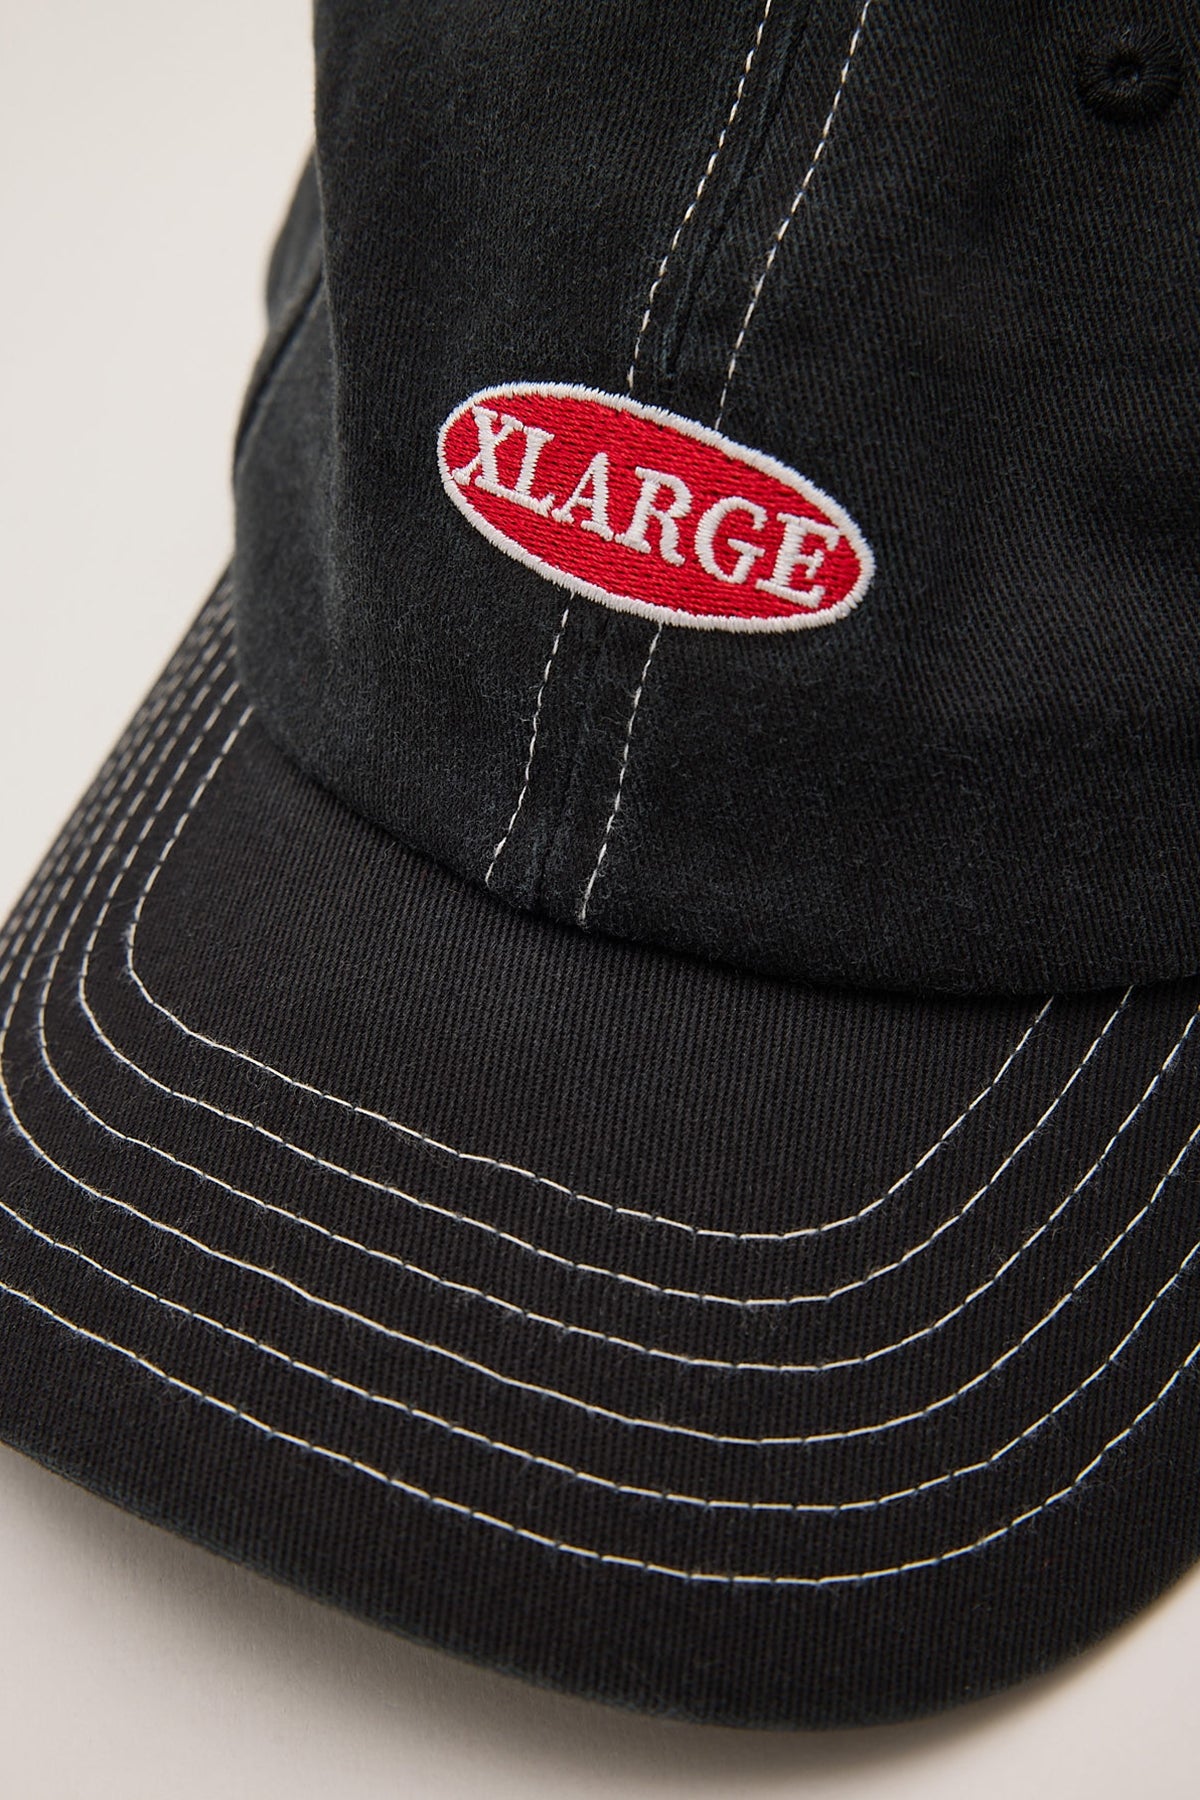 Xlarge Patch Low Pro Cap Black